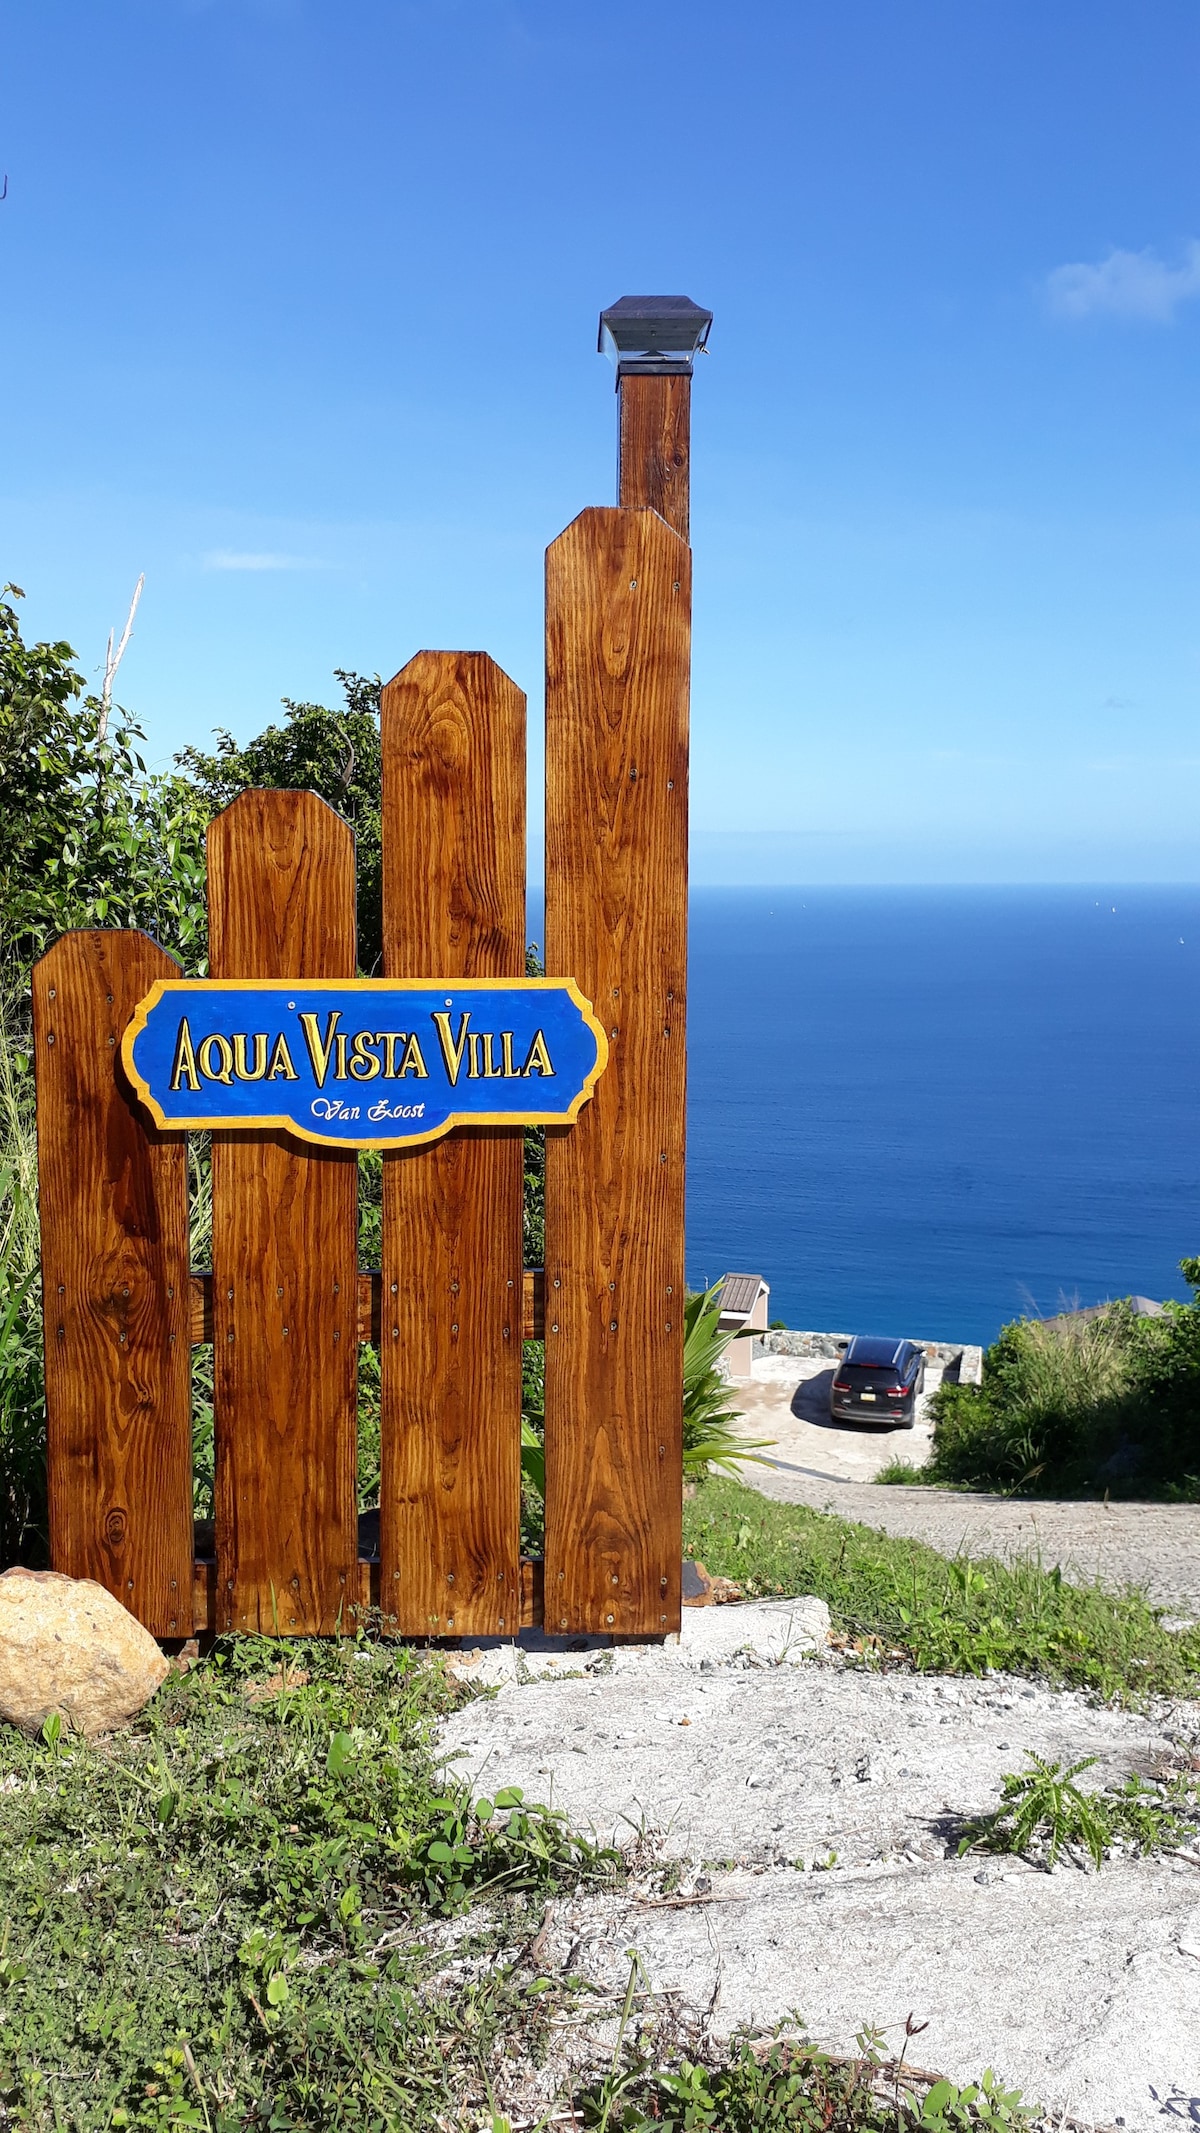 Aqua Vista Villa